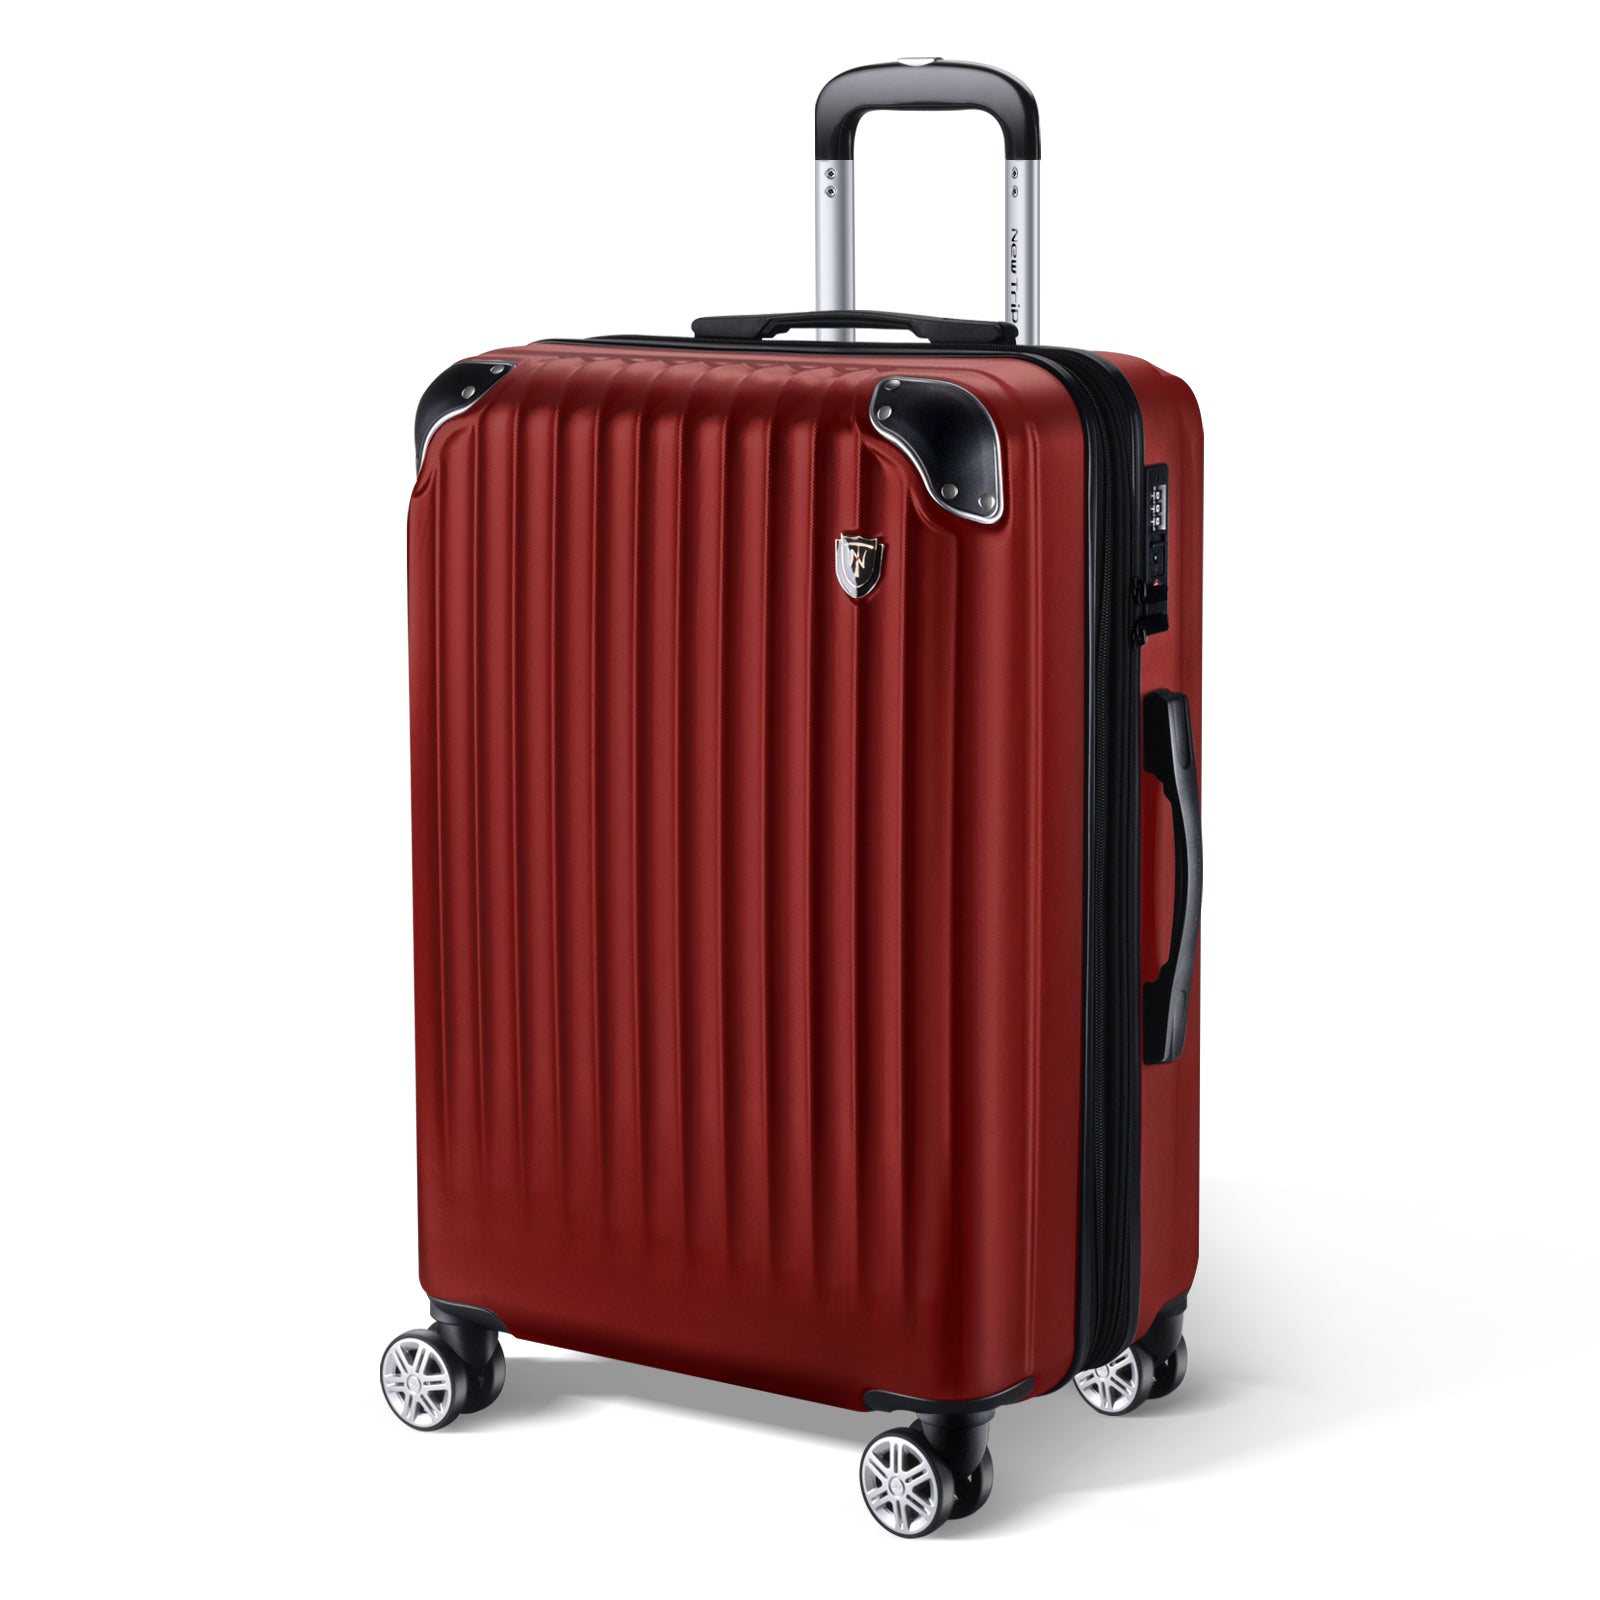 New Trip スーツケース キャリーケース（機内持込、ワインレッド) 旅行 ビジネス 出張 入院